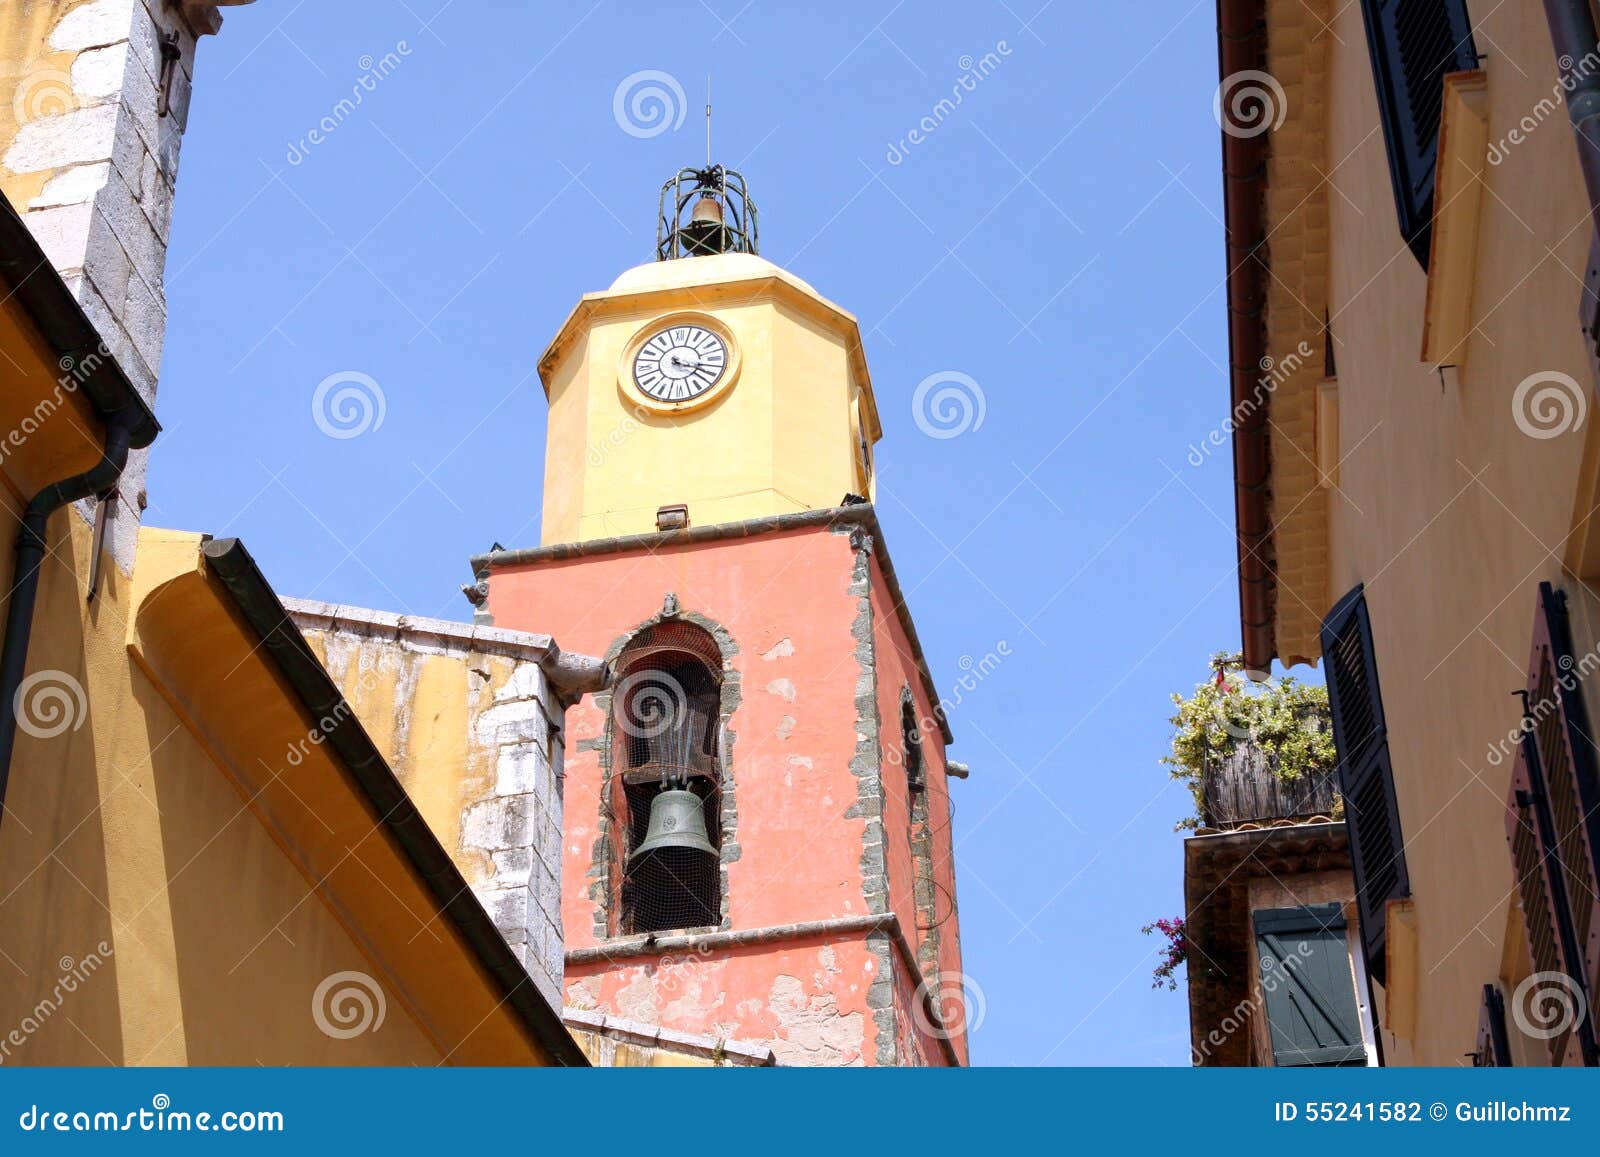 Церковь Франция колокольни St Tropez провансальская. Провансальская церковь колокольни в французской ривьере Провансали Alpes Cote d'Azur Франции St Tropez